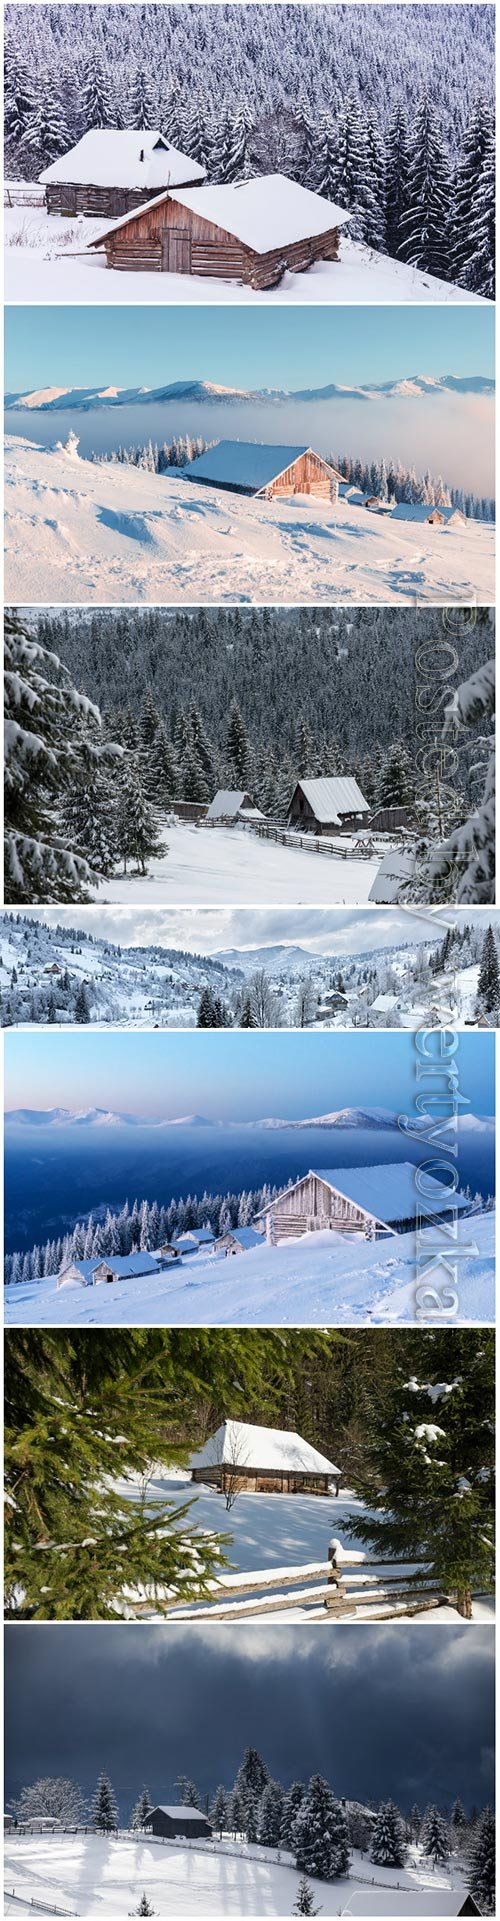 Winter landscape beautiful stock photo